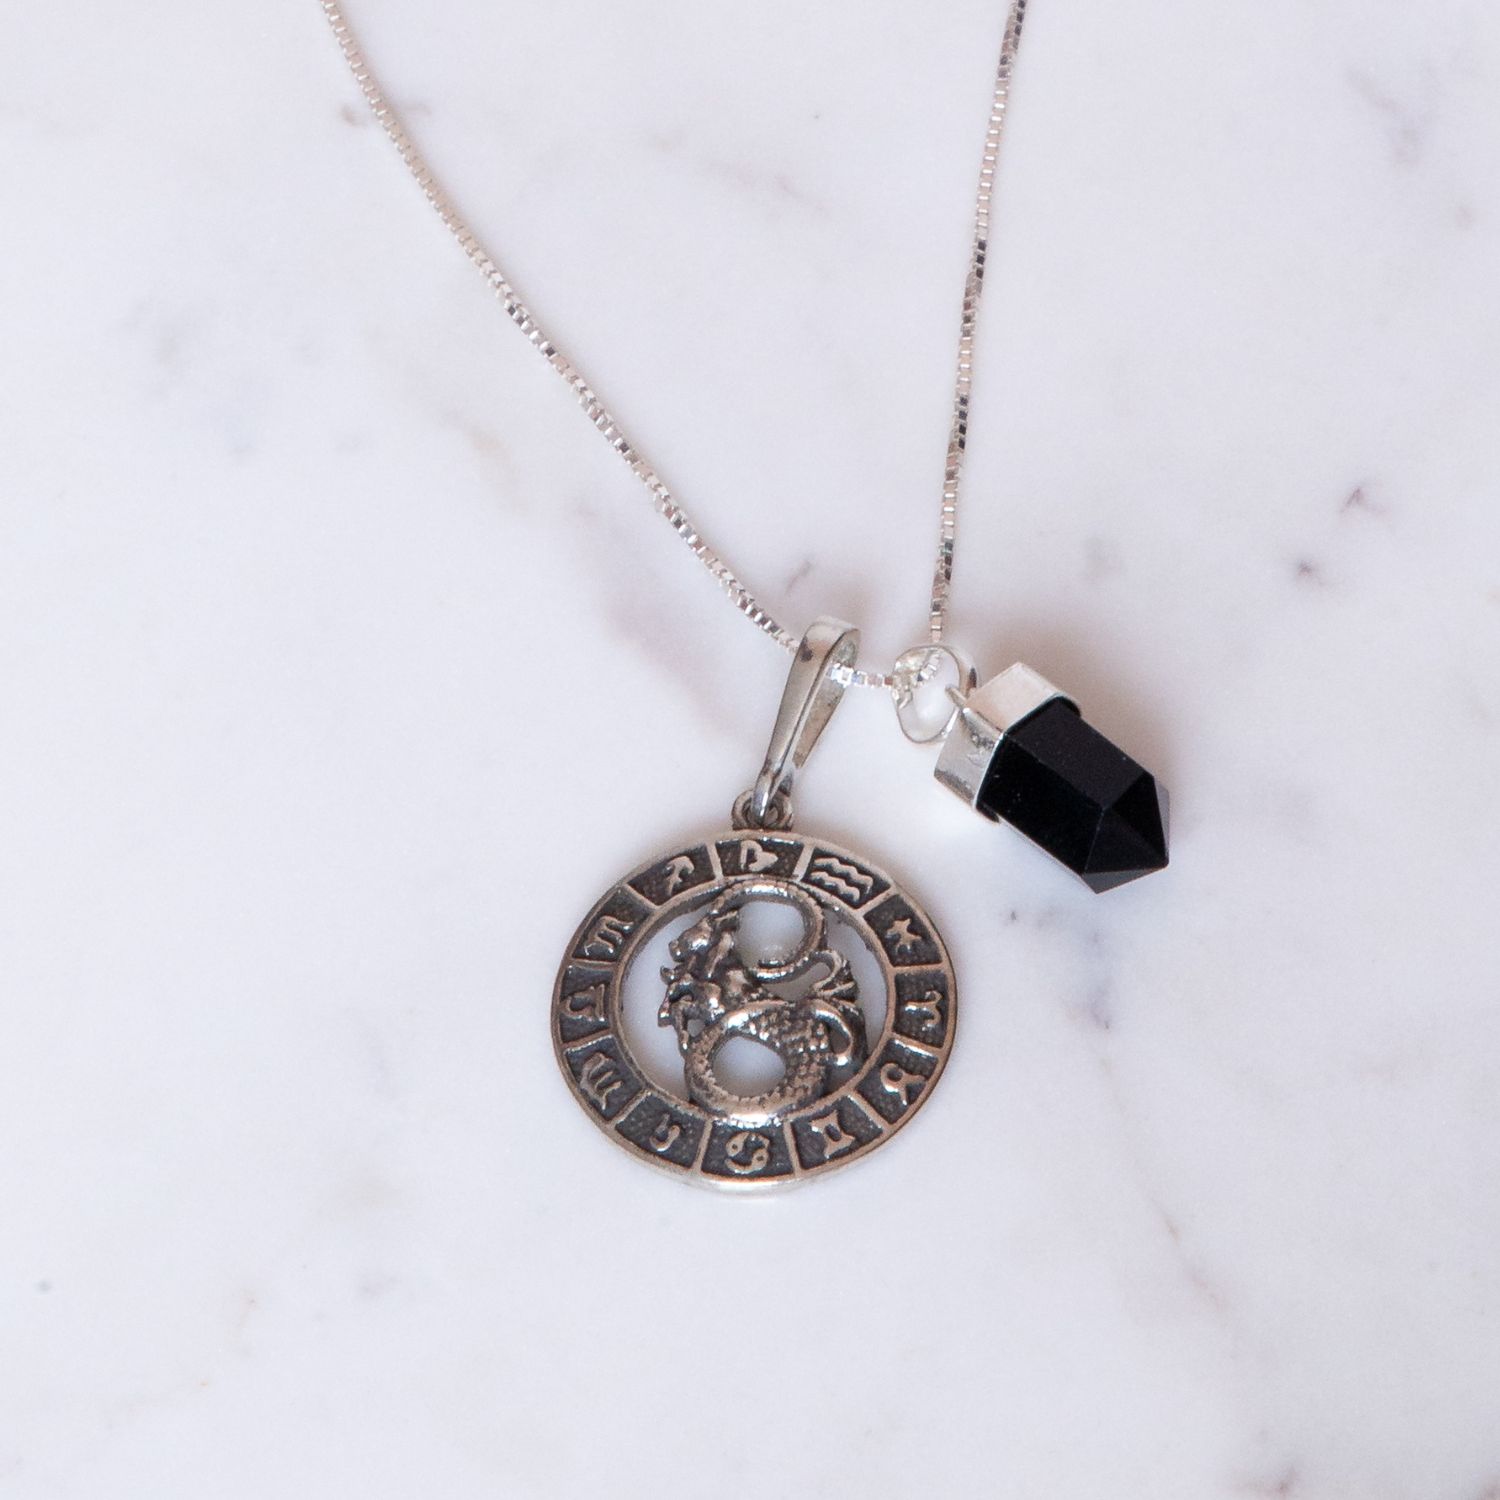 Pedra do signo de Capricórnio: colar com pingente de ônix + medalhinha